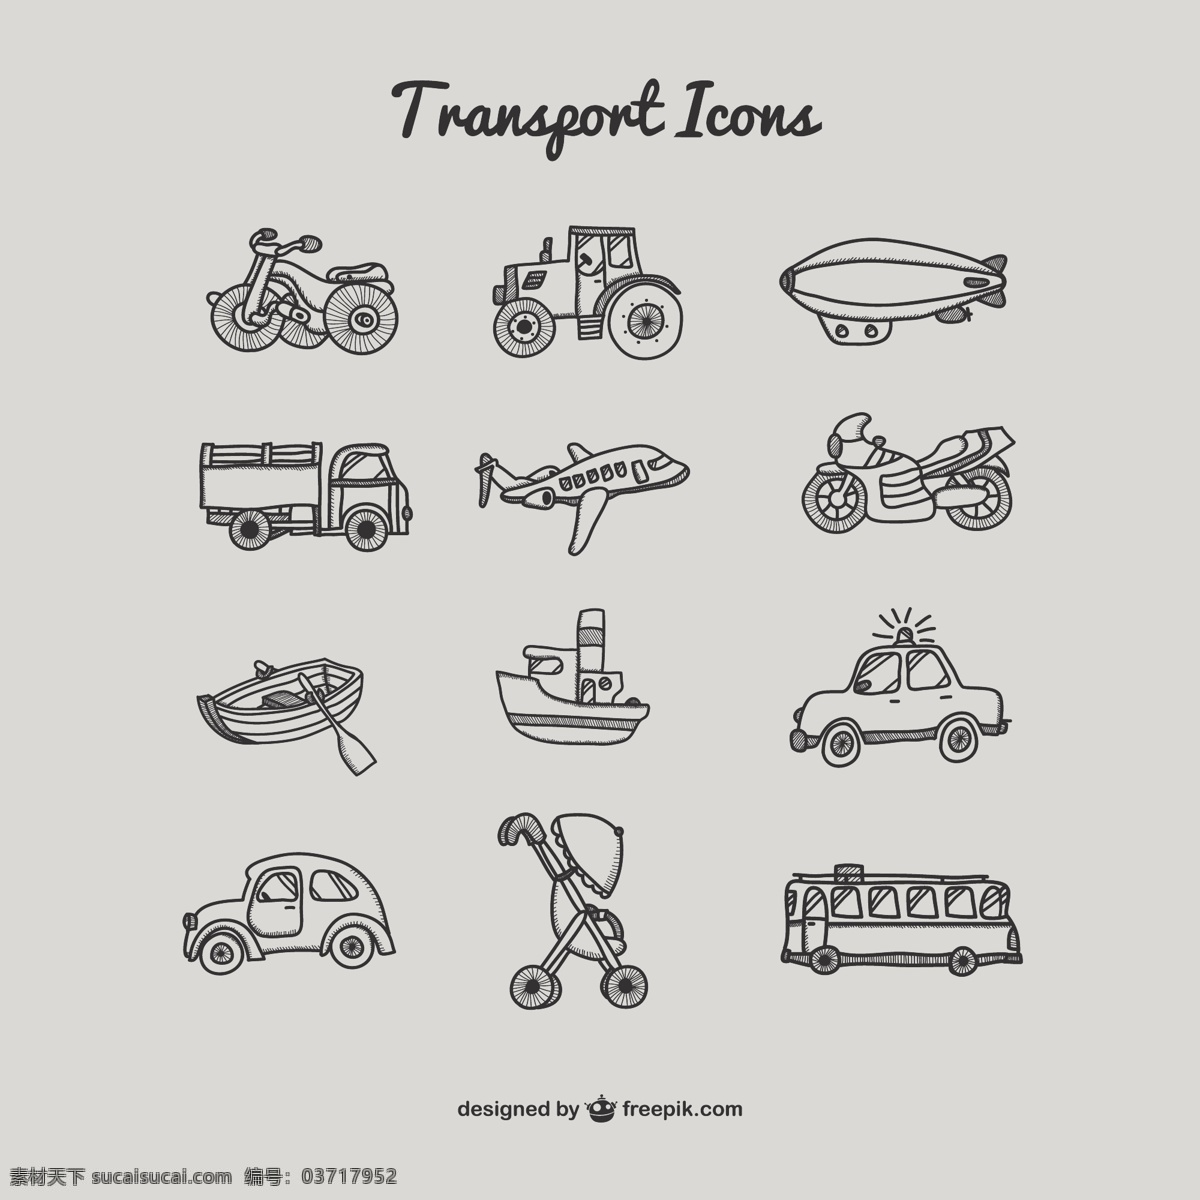 图形 传输 图标 集合 婴儿车 公共汽车 飞机 摩托车 船 运输 警察 绘图 拖拉机 自行车 汽车图标 图标设置 马车 卡车 集集 灰色